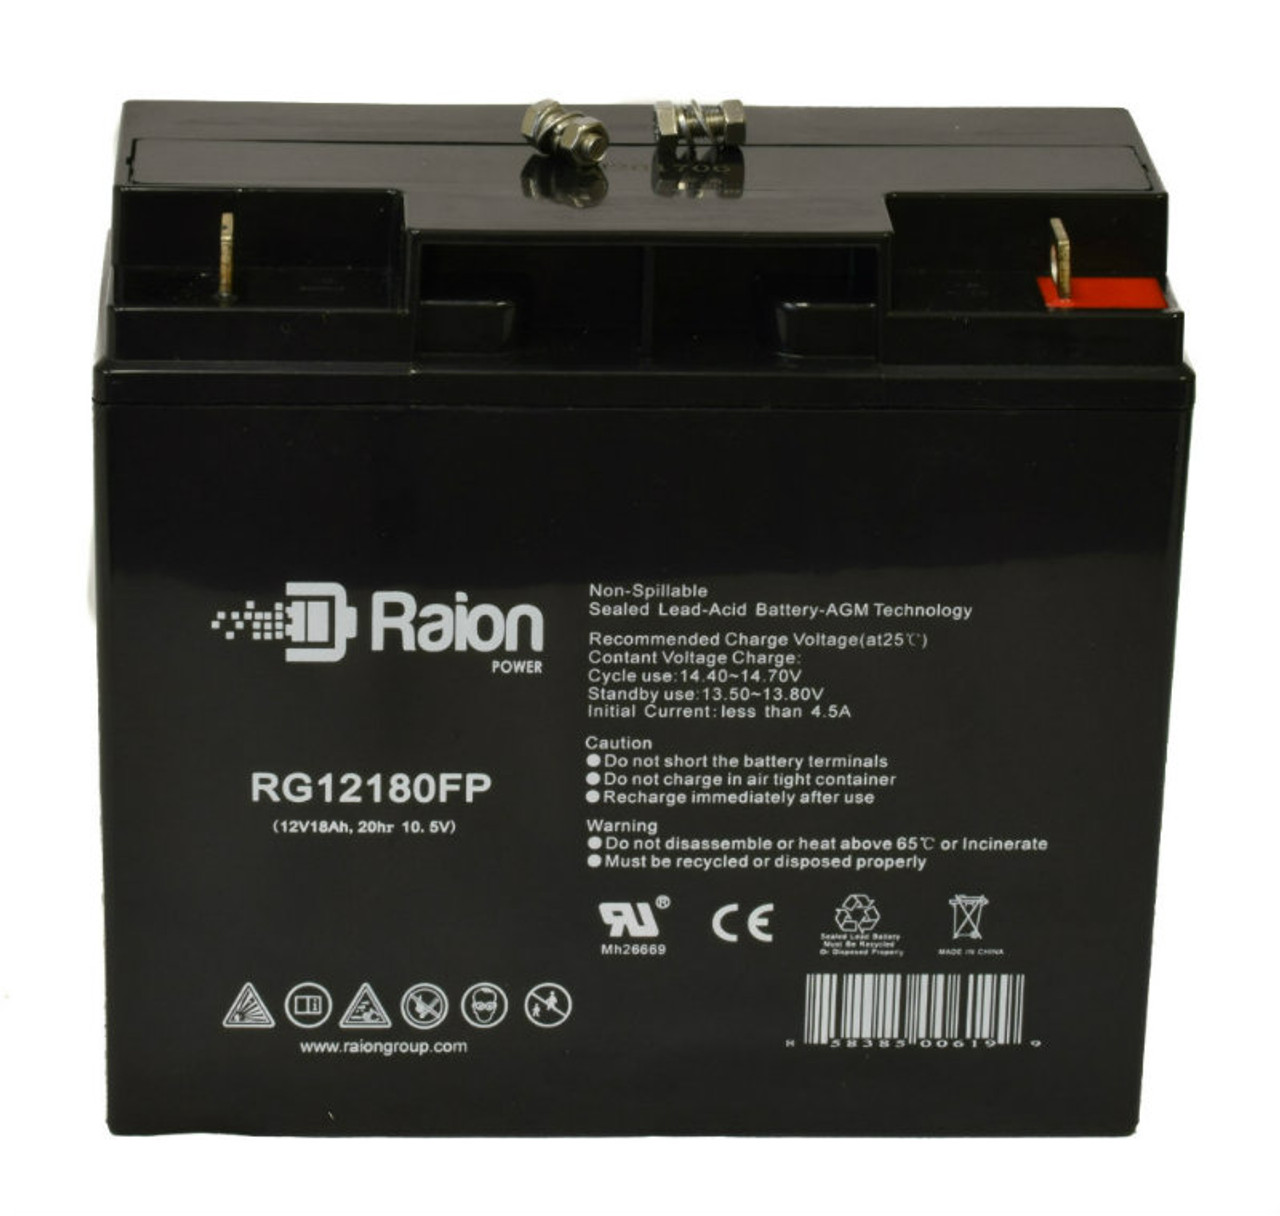 Raion Power RG12180FP 12V 18Ah Lead Acid Battery for Lightalarms 8700018